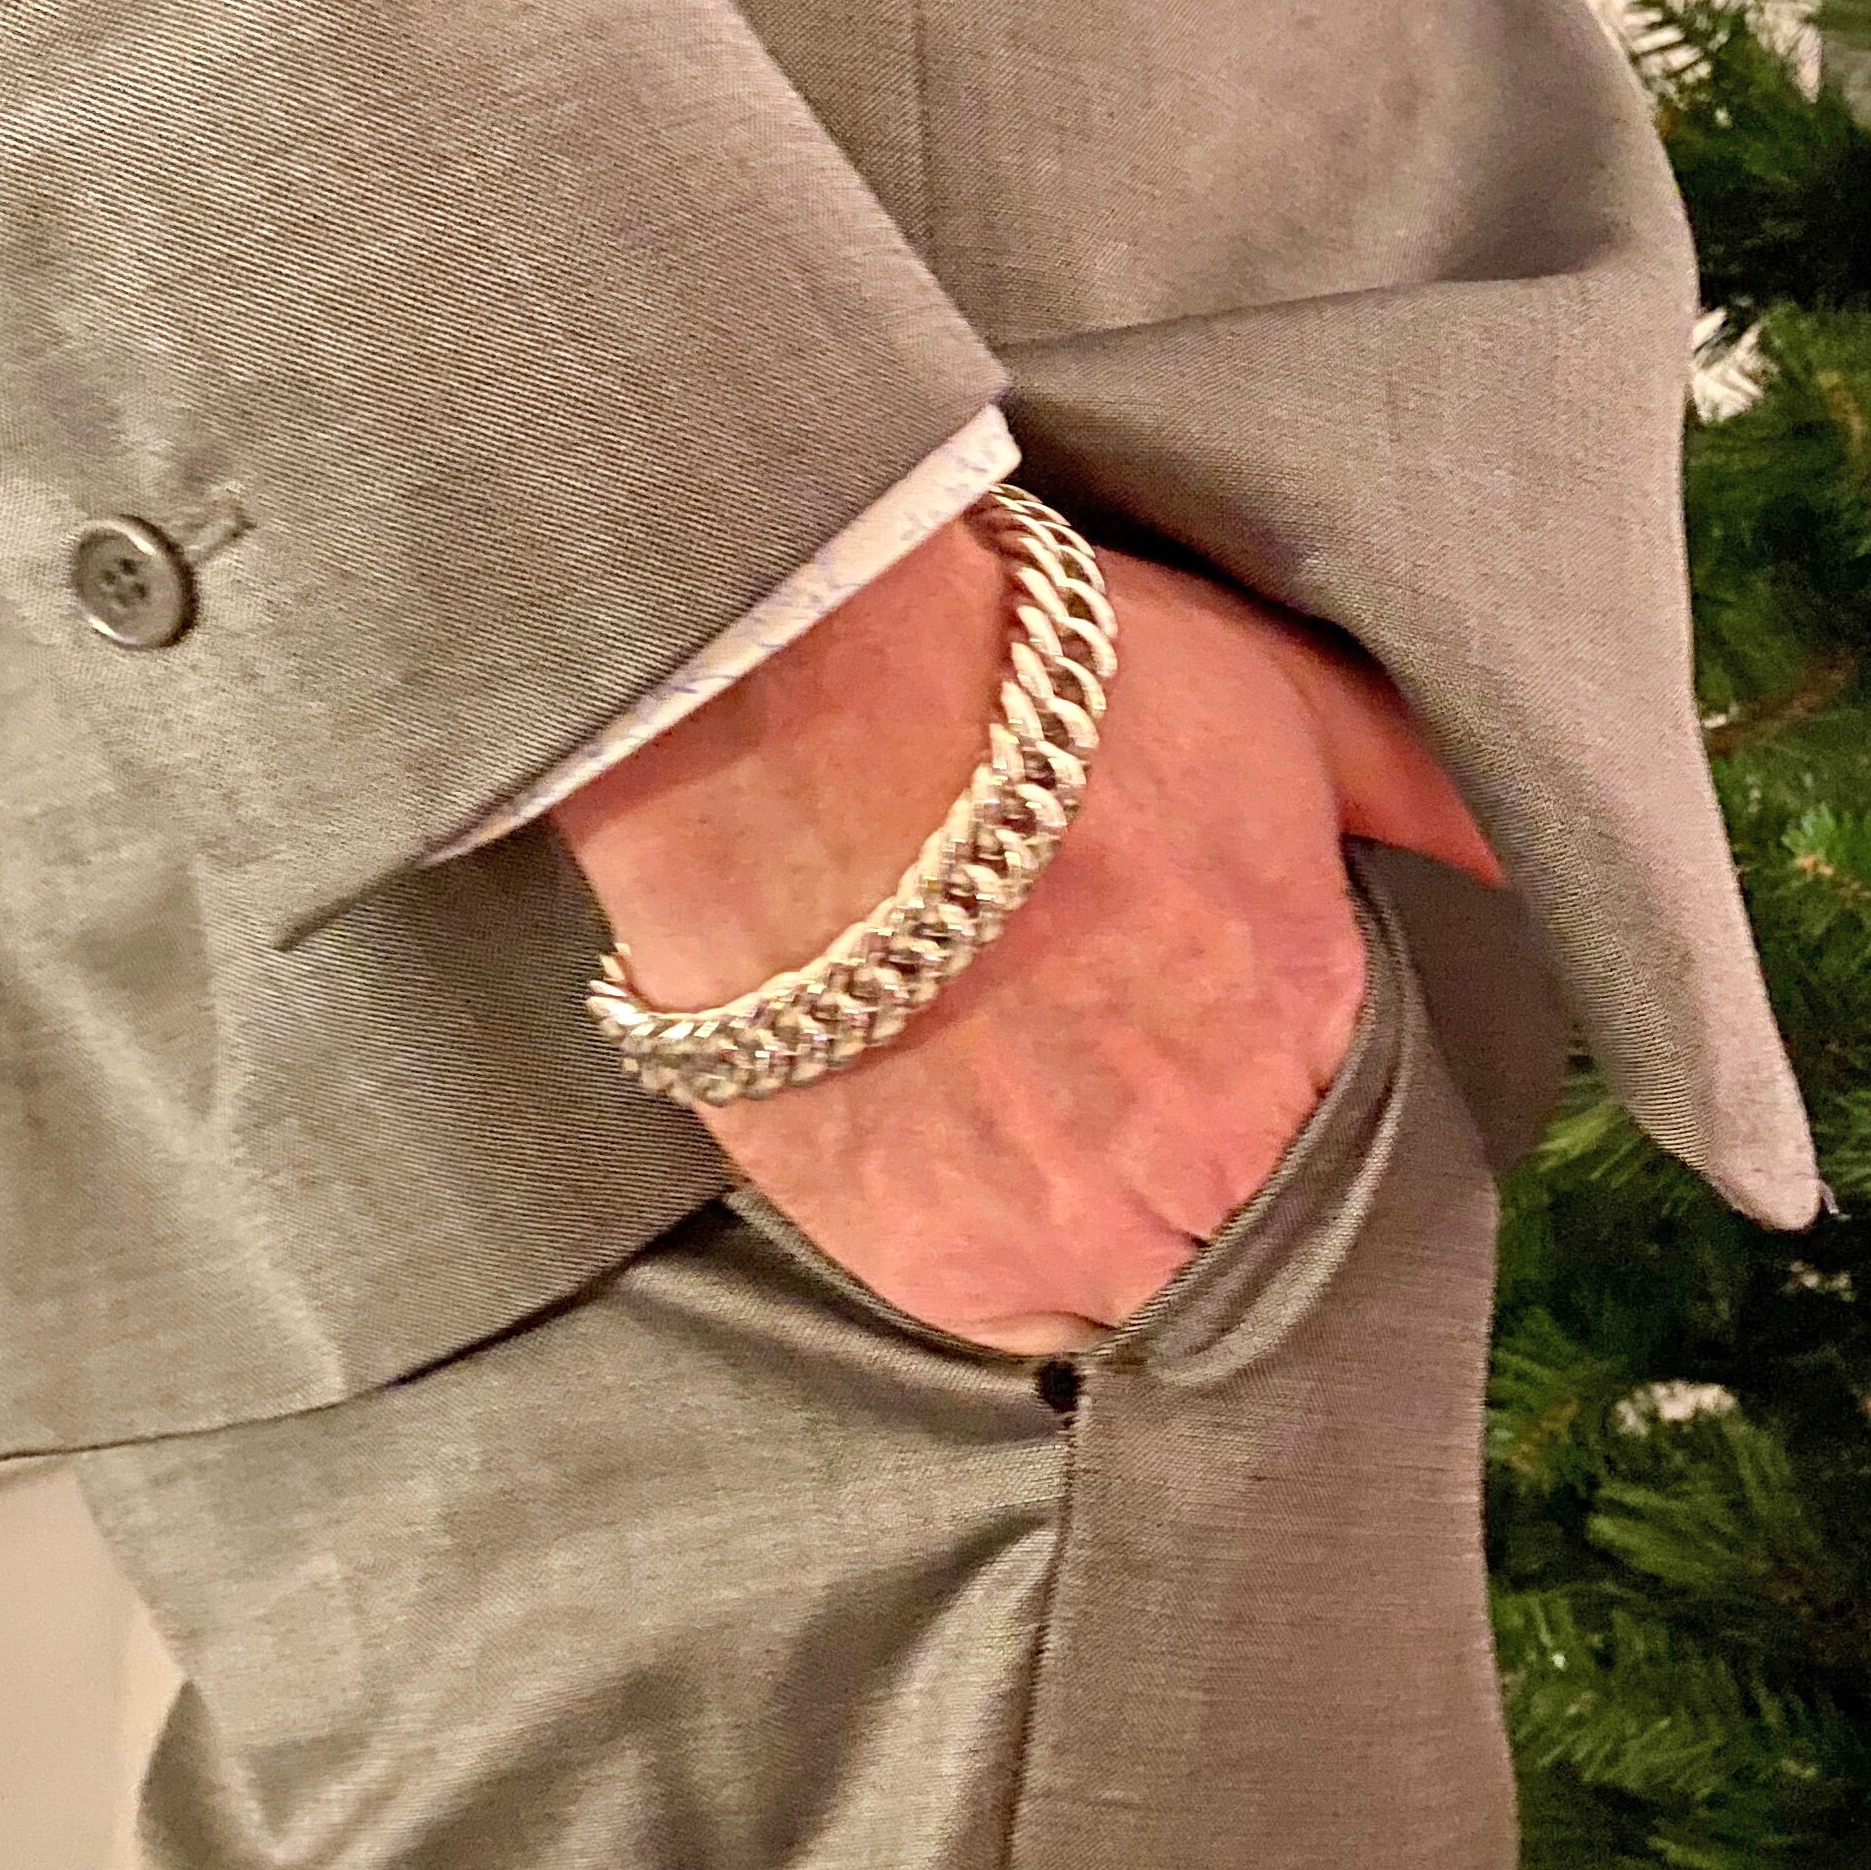 man wearing silver bracelet